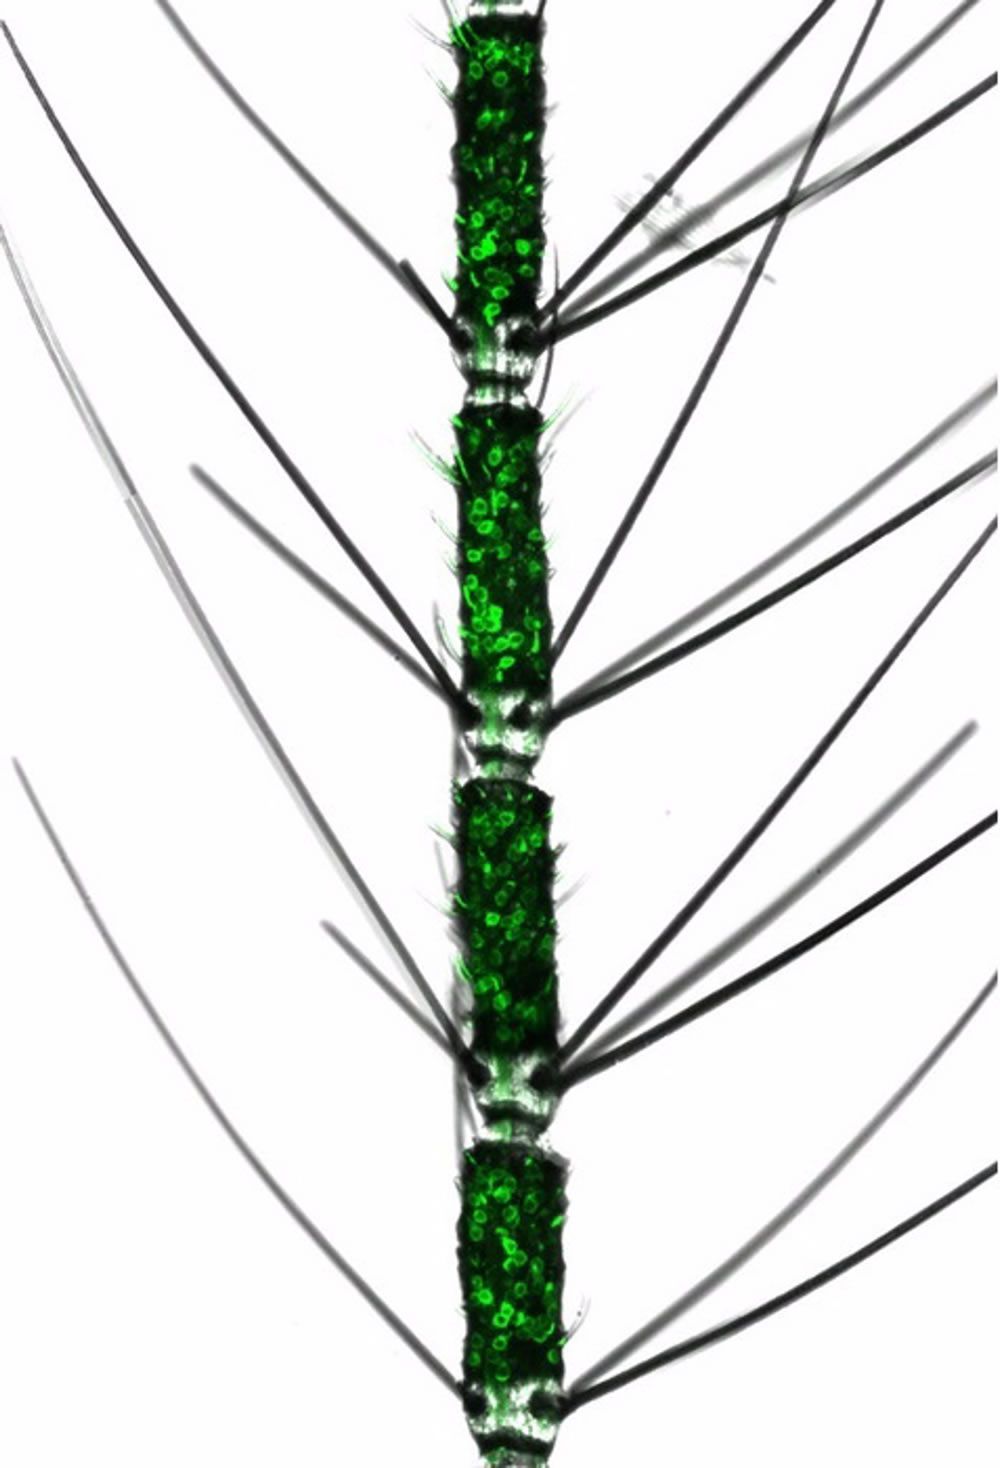 Antena de mosquito con neuronas olfativas marcadas con fluorescencia